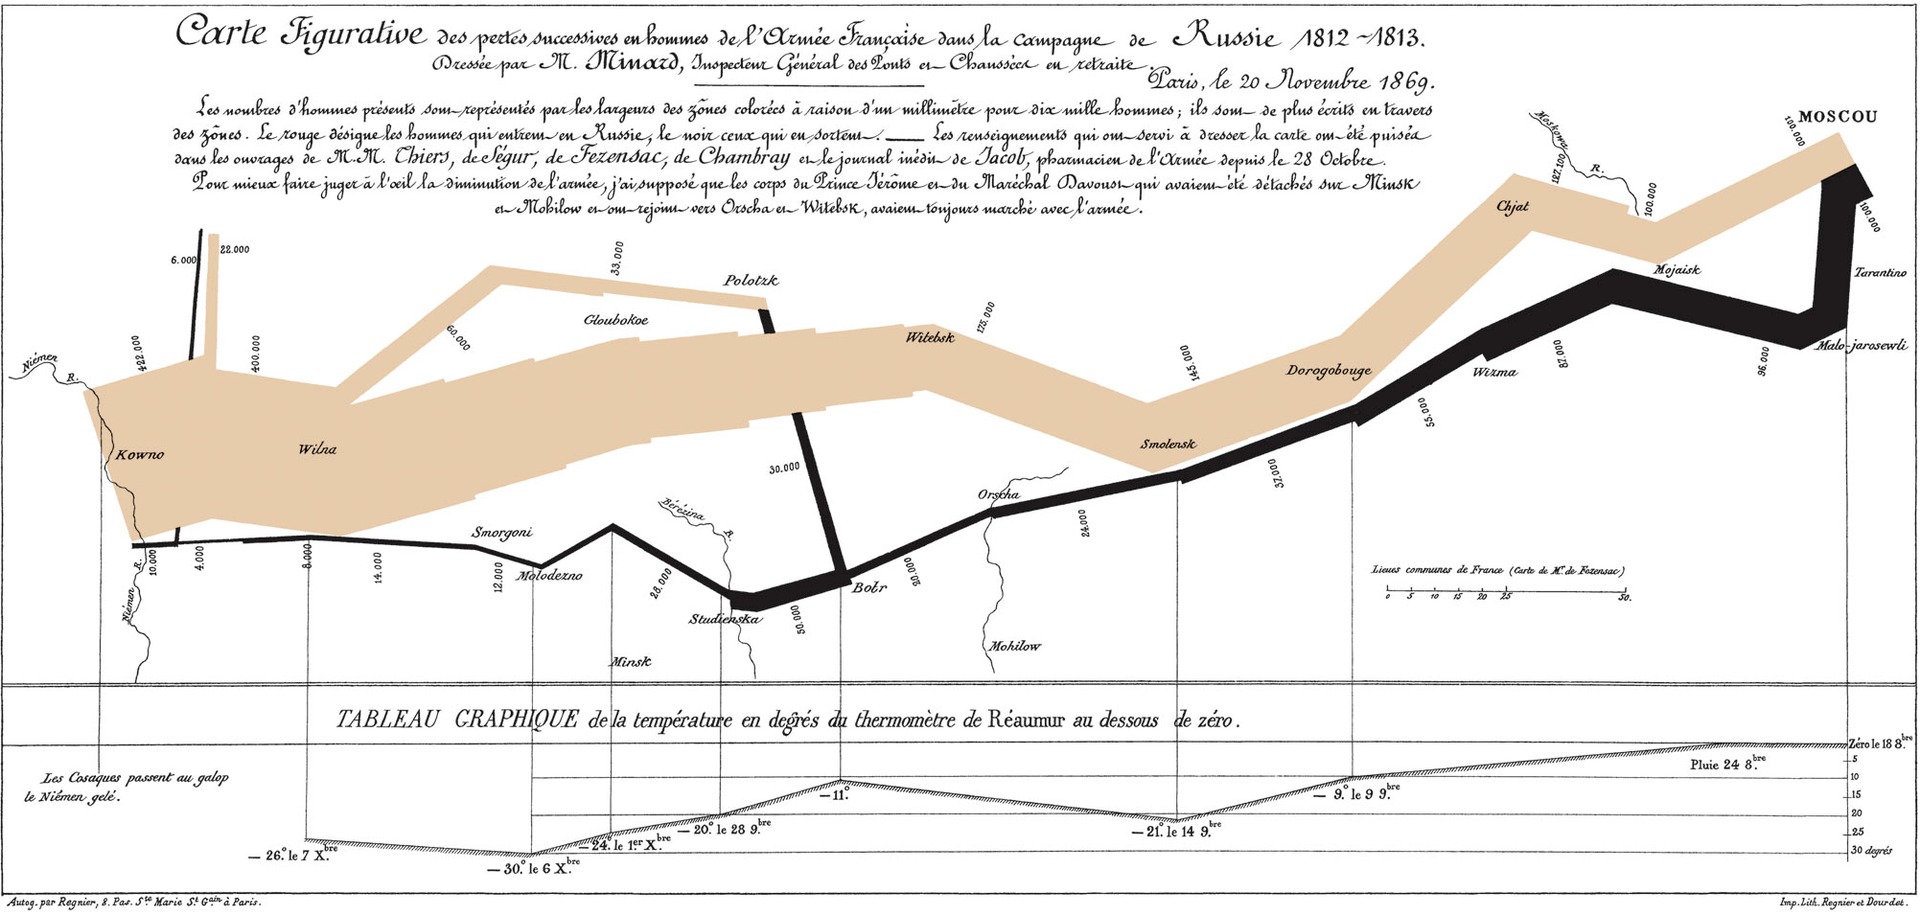 marcha de napoleon visualizacion de datos